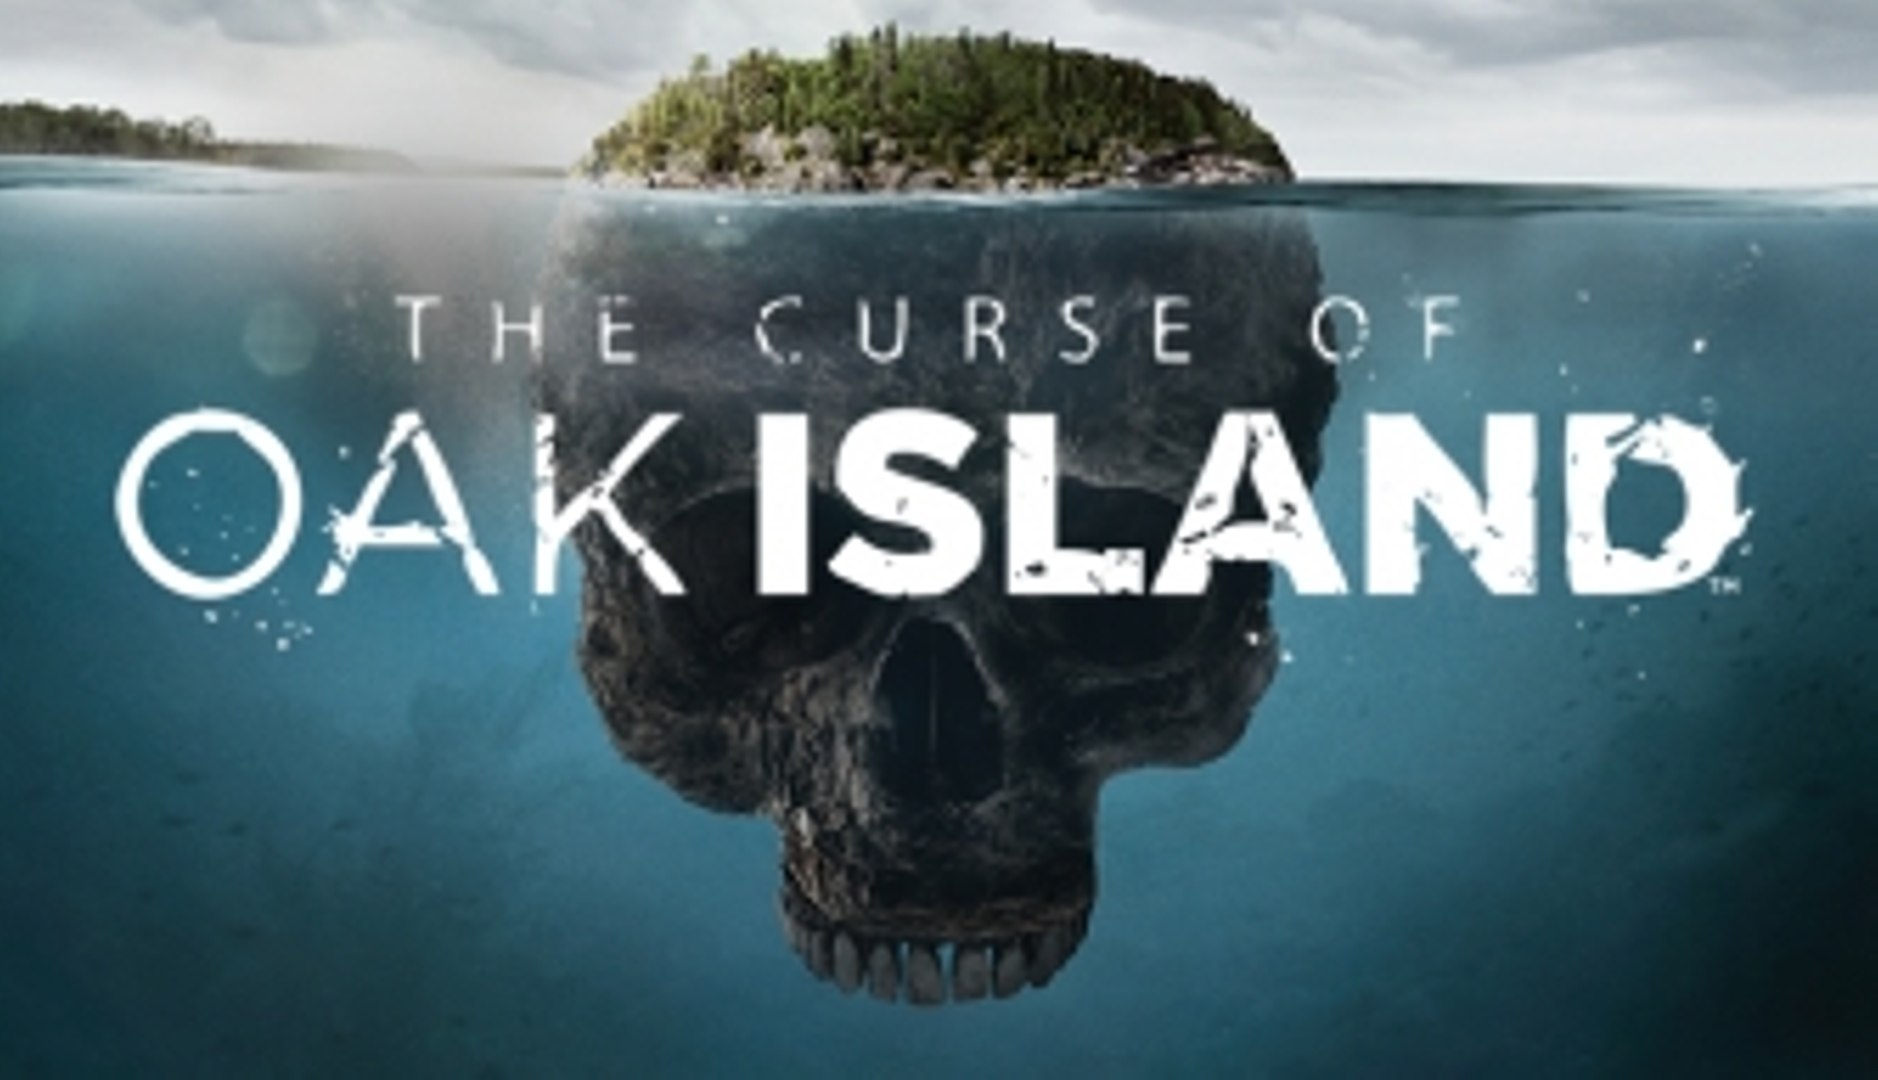 The Curse of Oak Island Season 6 Episode 16 Watch Online